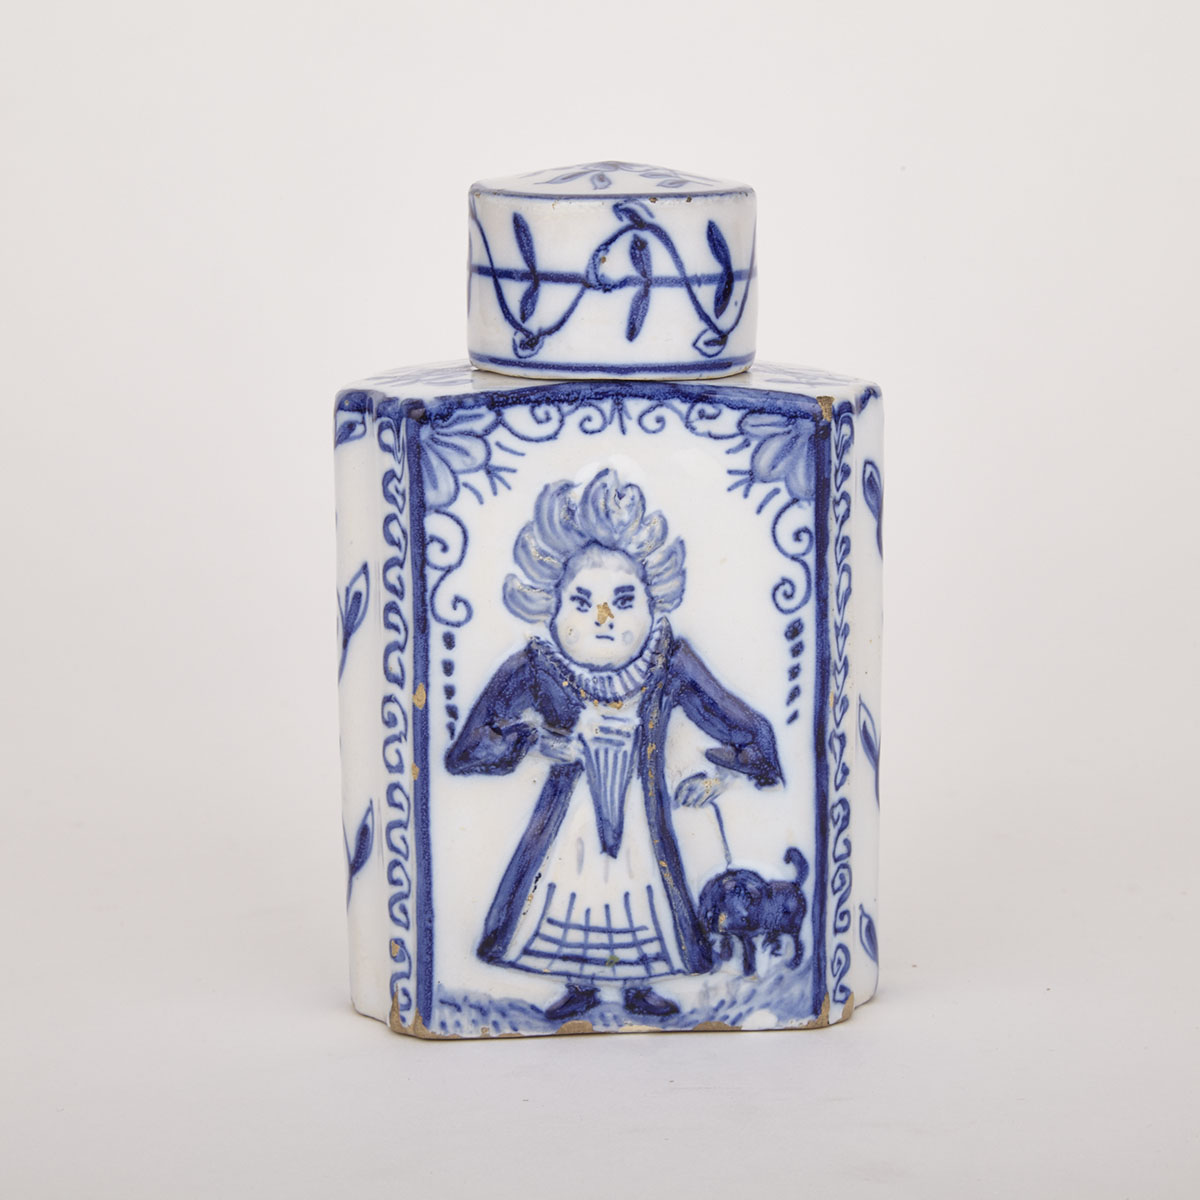 Dutch Delft Tea Caddy and Cover, c.1800